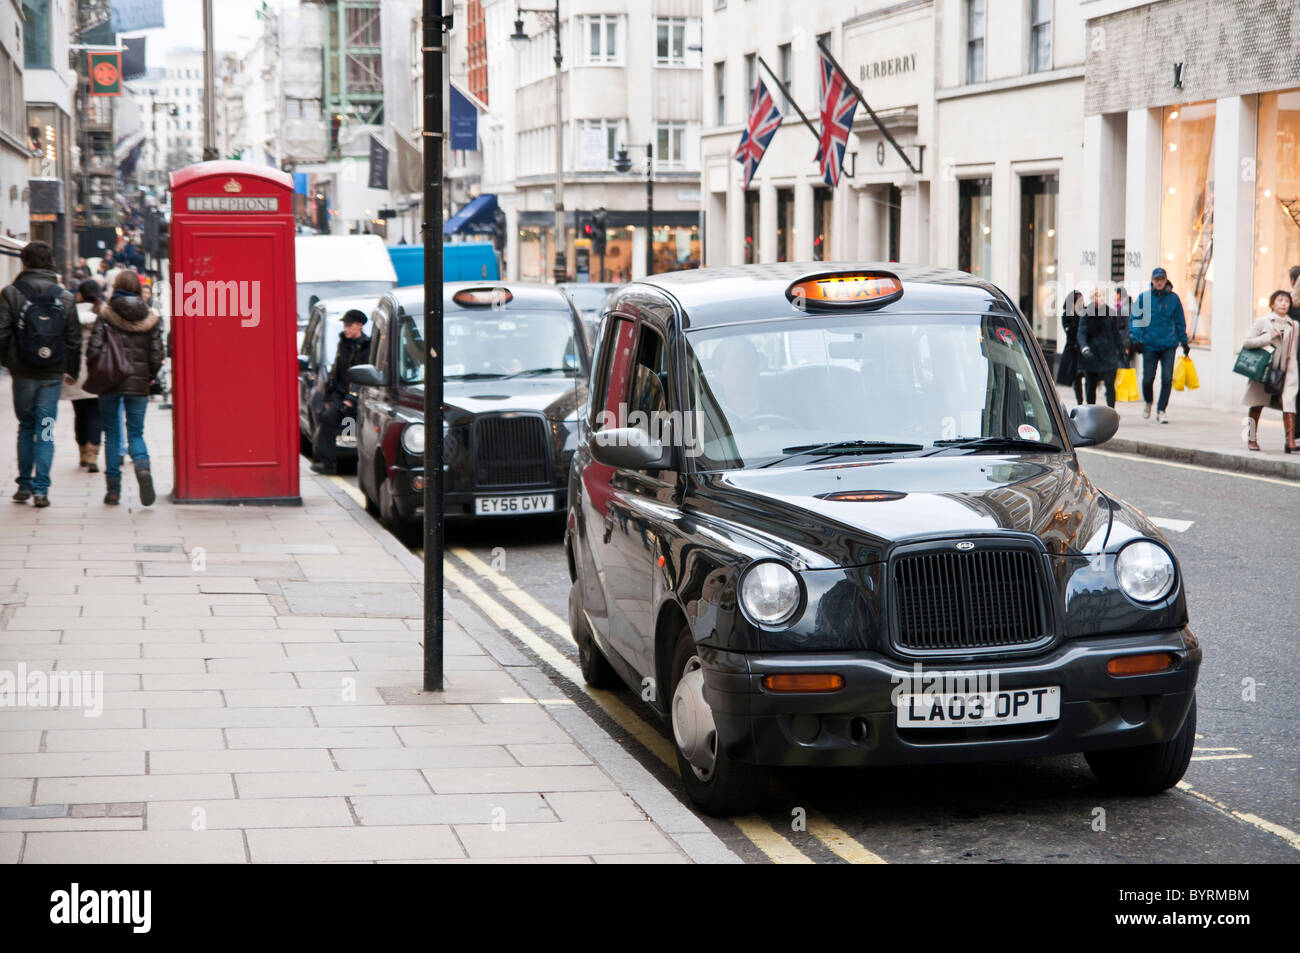 LONDON - 04. Februar: Traditionelle Taxis in New Bond Street, einer der teuersten Gegenden in London, nach Hause zu feinen geparkt Stockfoto